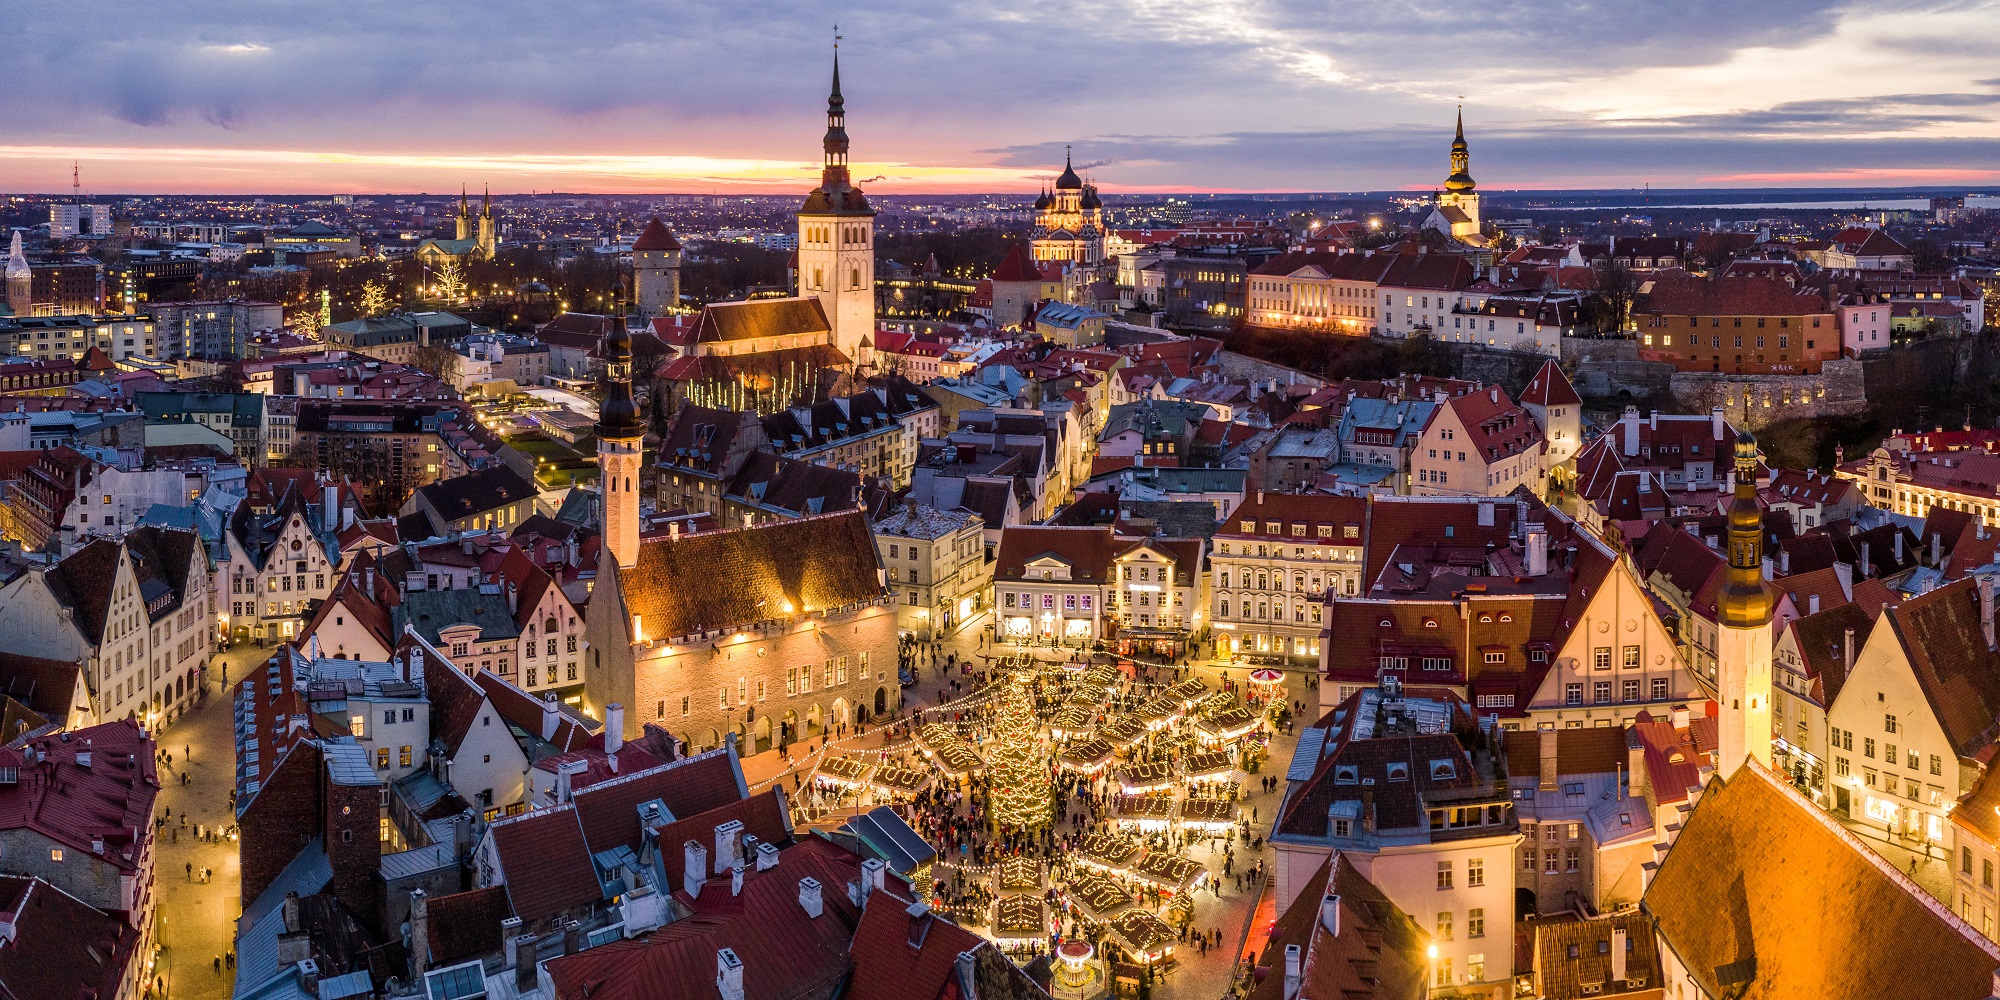 Condé Nast Traveler again declares the Tallinn Christmas market as one